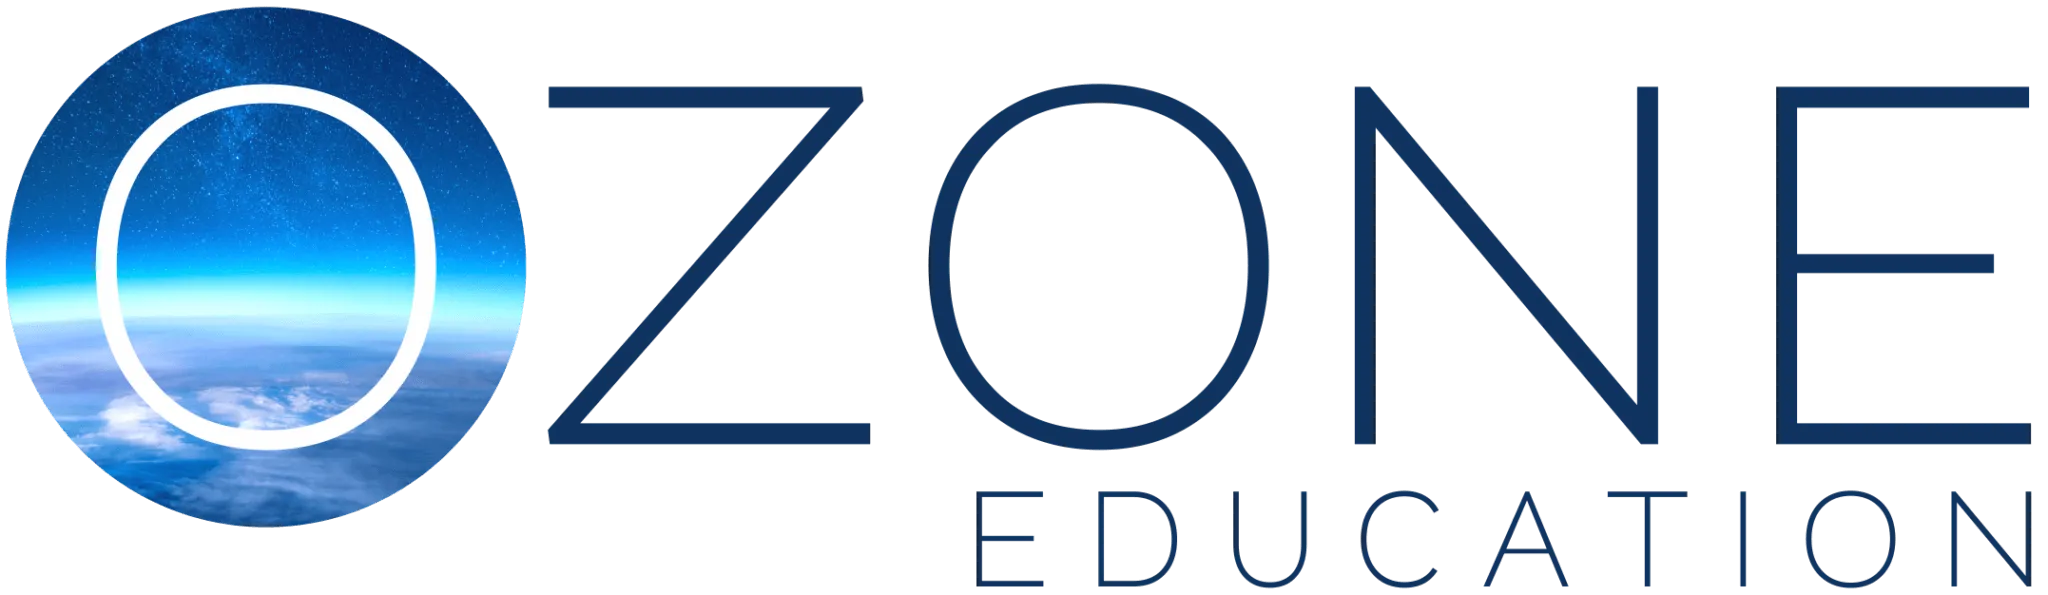 ozone education logo